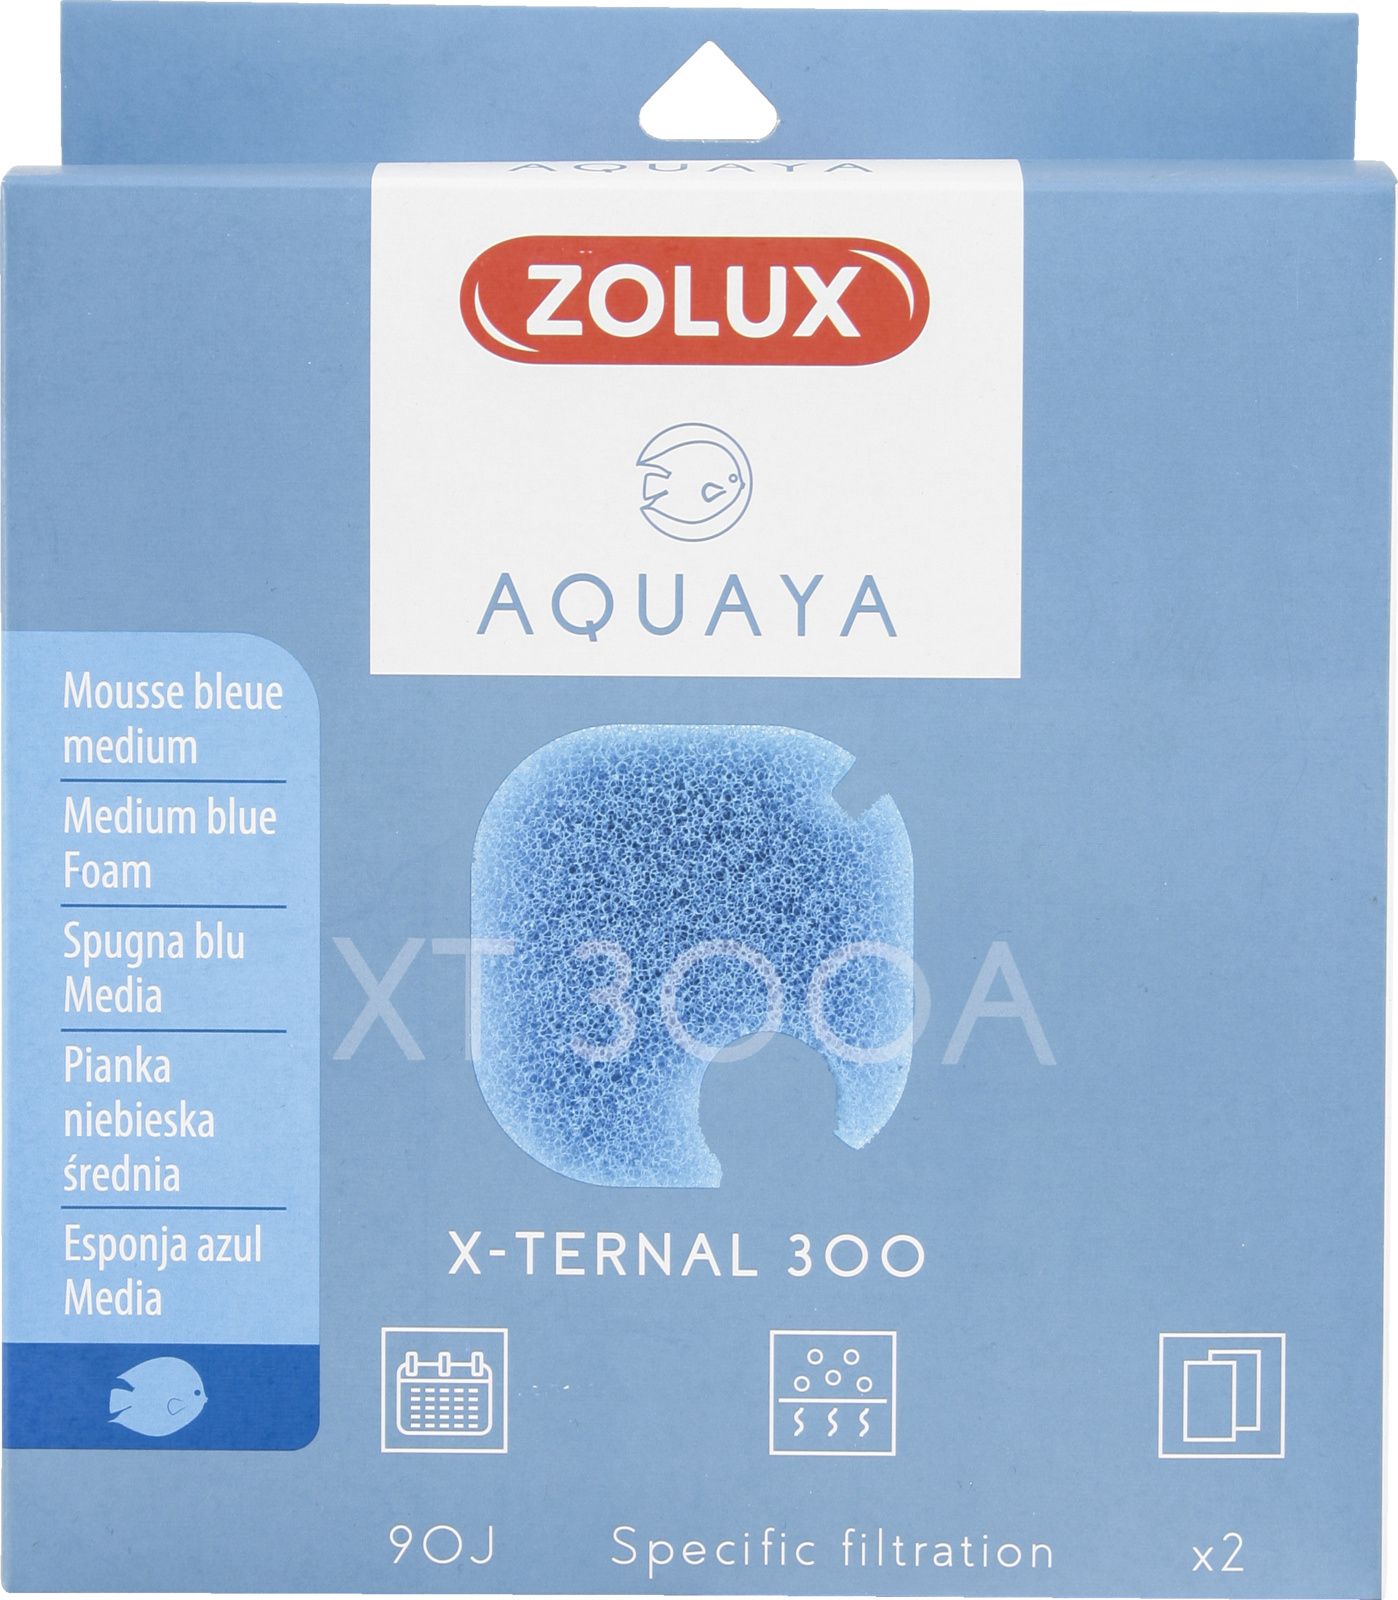 Zolux AQUAYA Wklad gabka Blue Foam Xternal 300 7544713 (3336023302478) akvārija filtrs